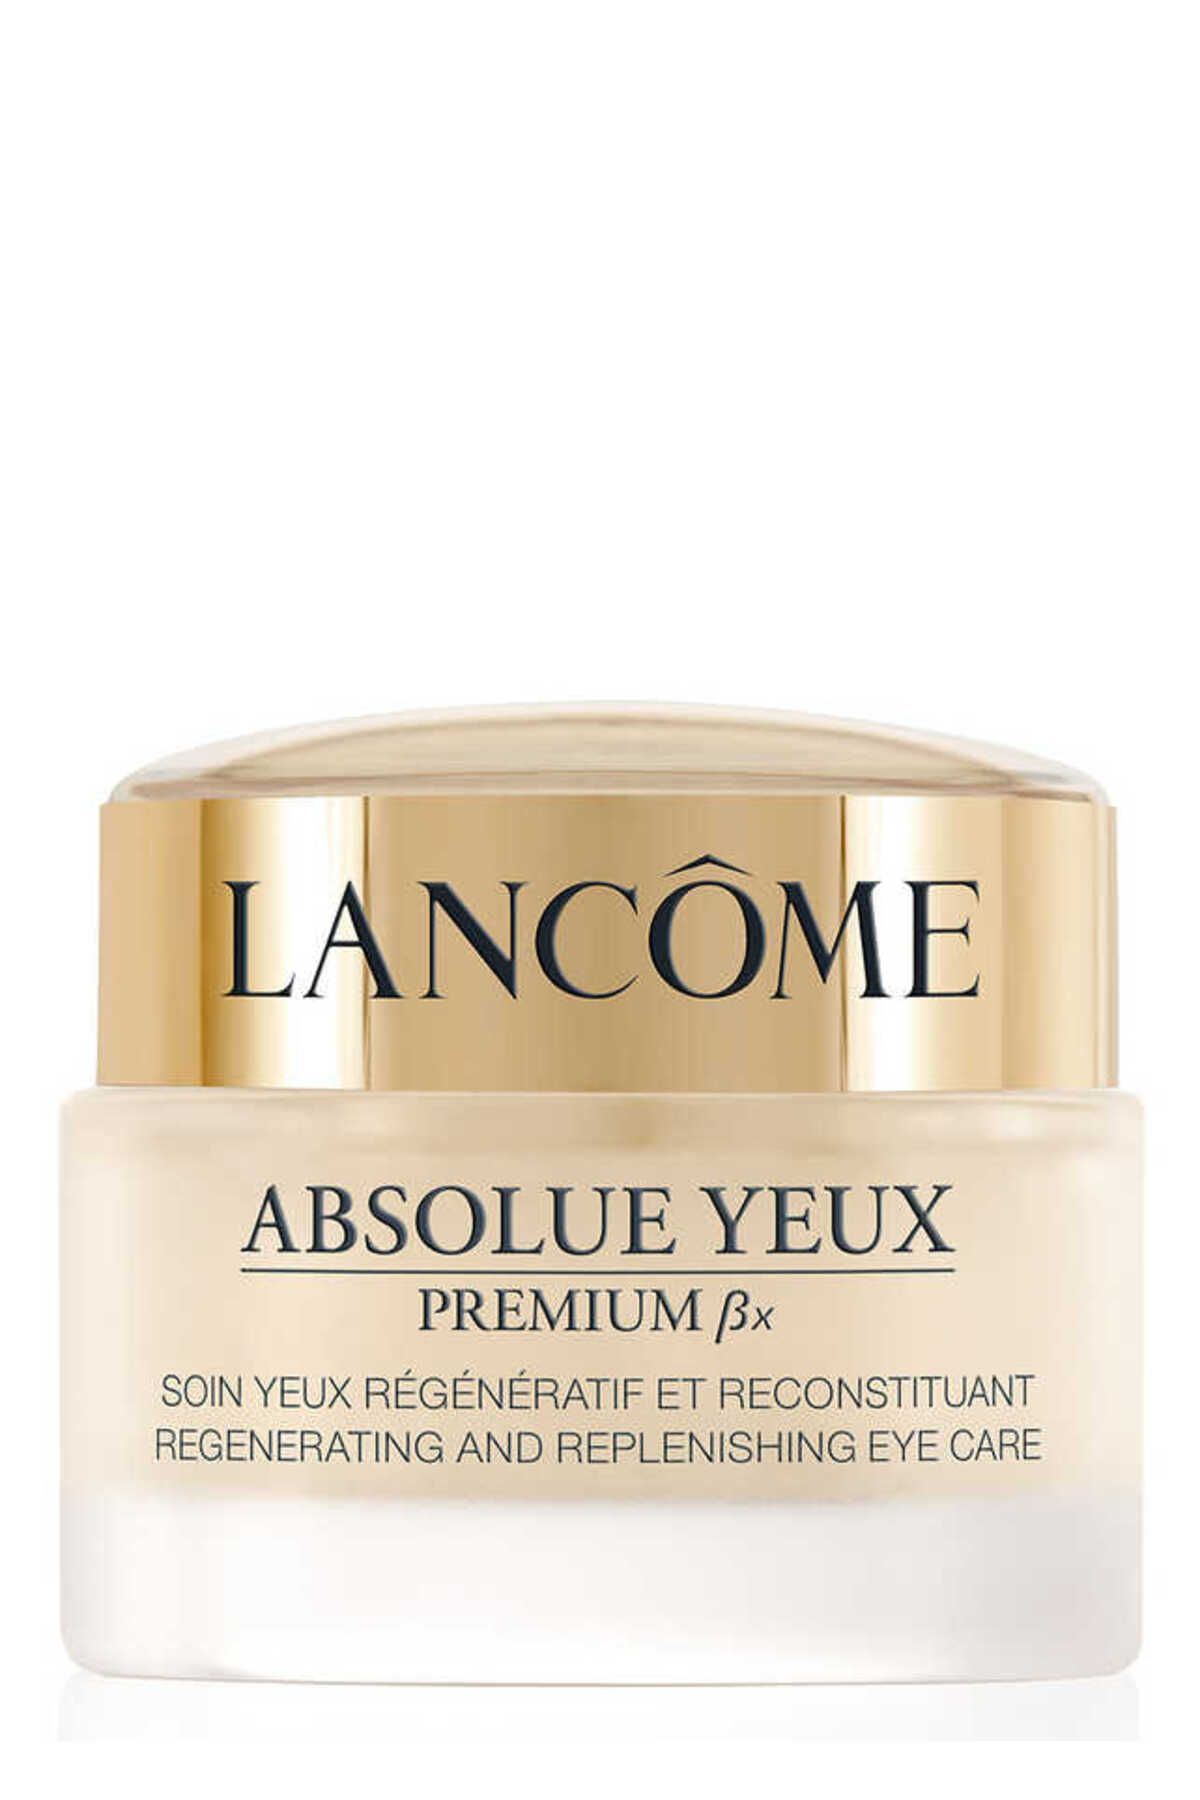 Lancome Absolue Yeux Premium ßx Cilt Yenilemeye Yardımcı Göz Bakım Kremi 20 ml 3605532972152